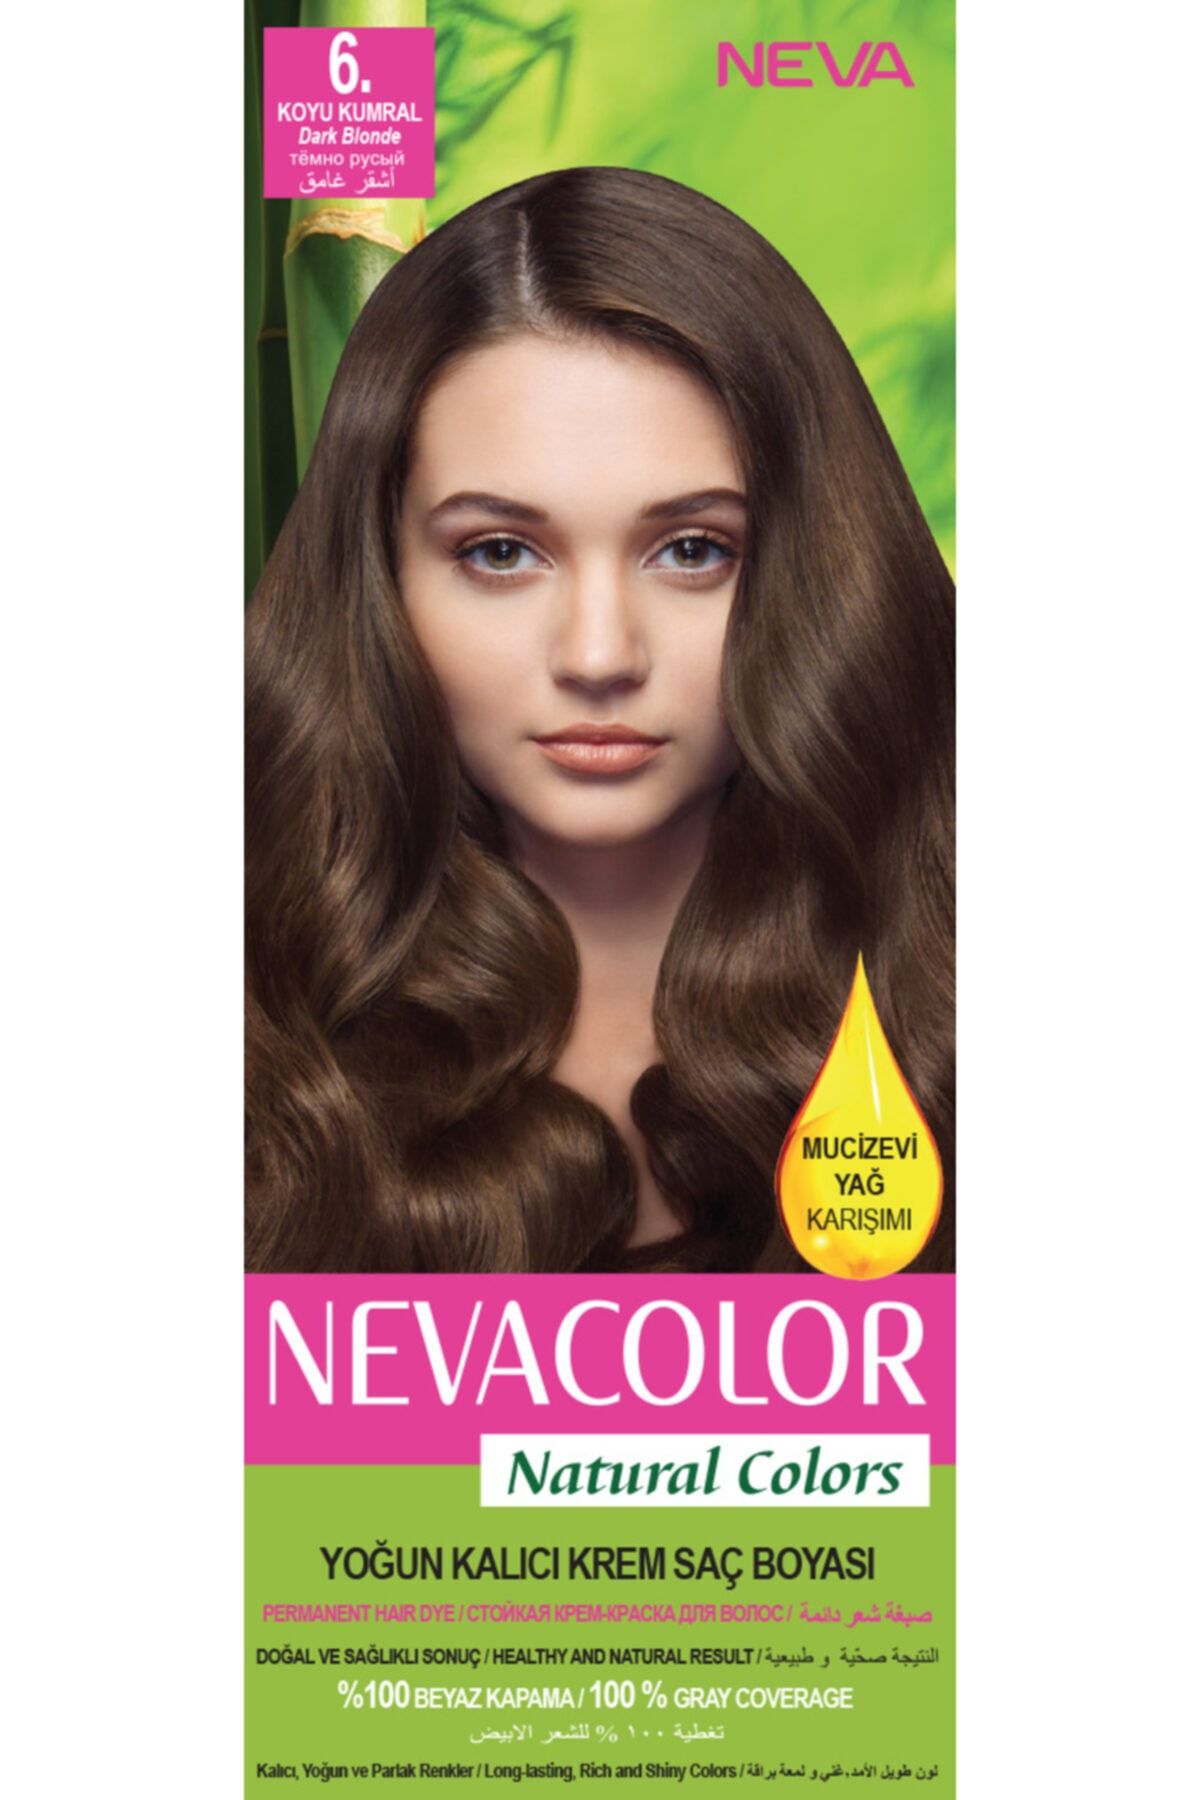 Neva Color Nevacolor Natural Colors 6. Koyu Kumral - Kalıcı Krem Saç Boyası Seti